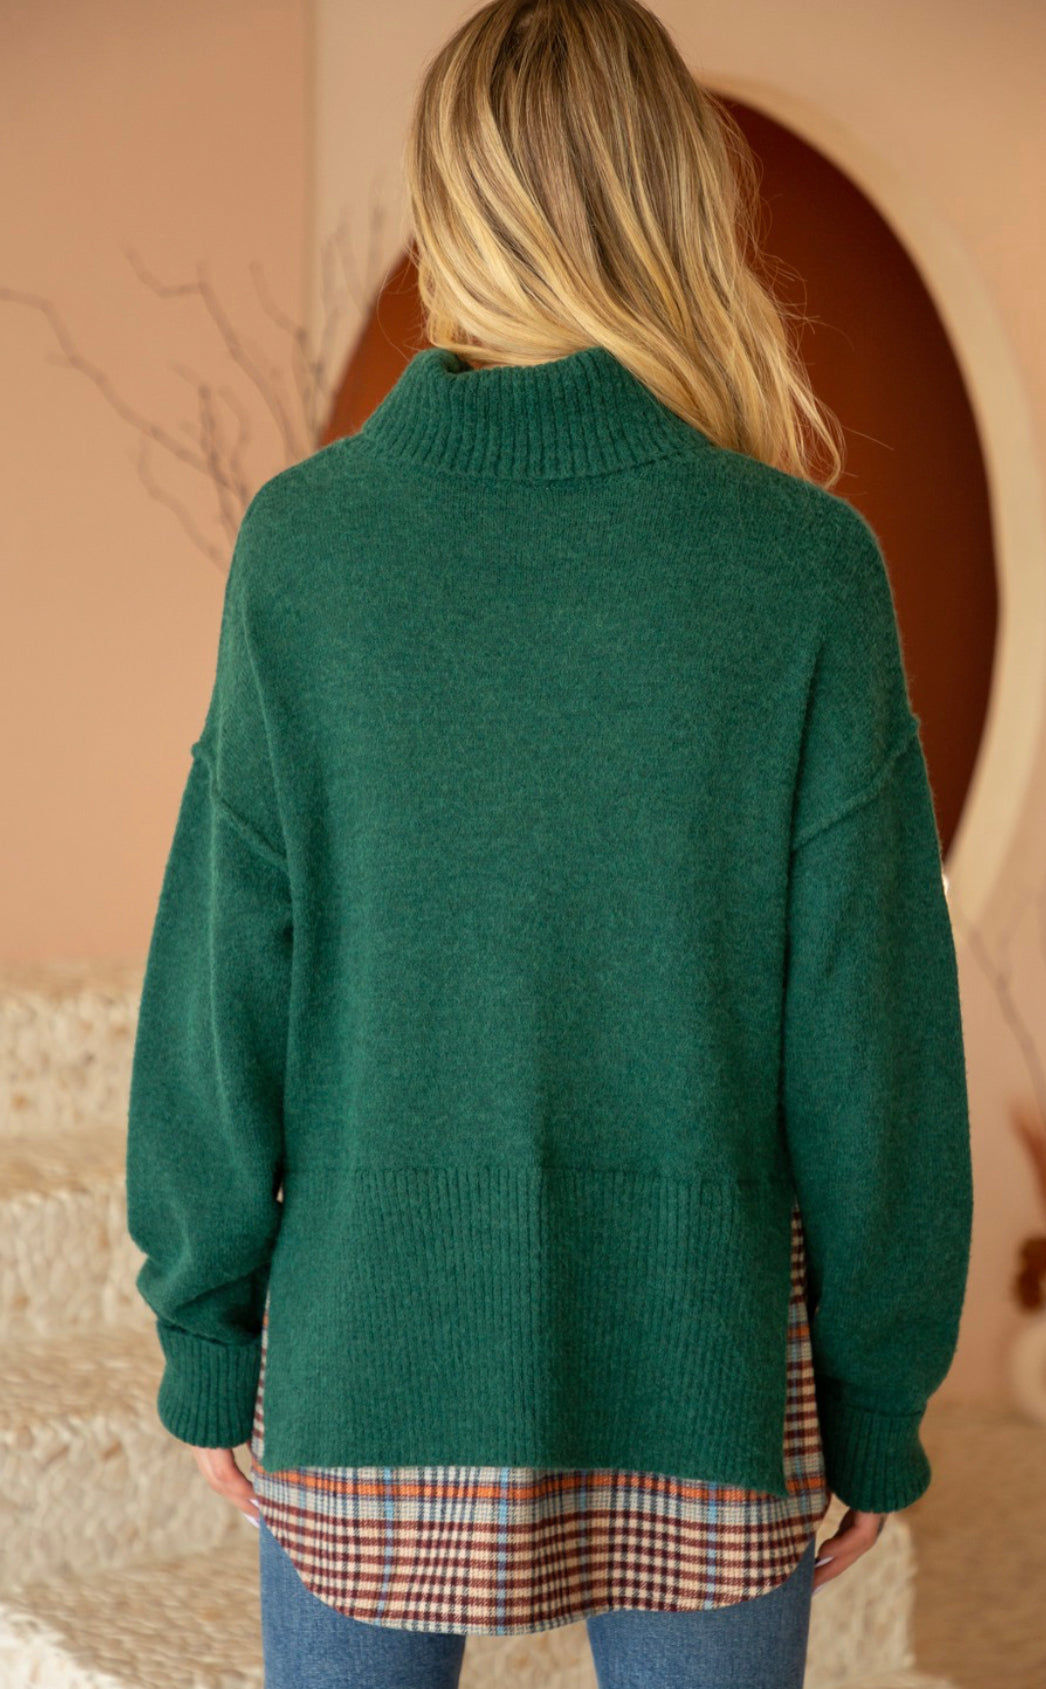 The Ashley Oversize Sweater